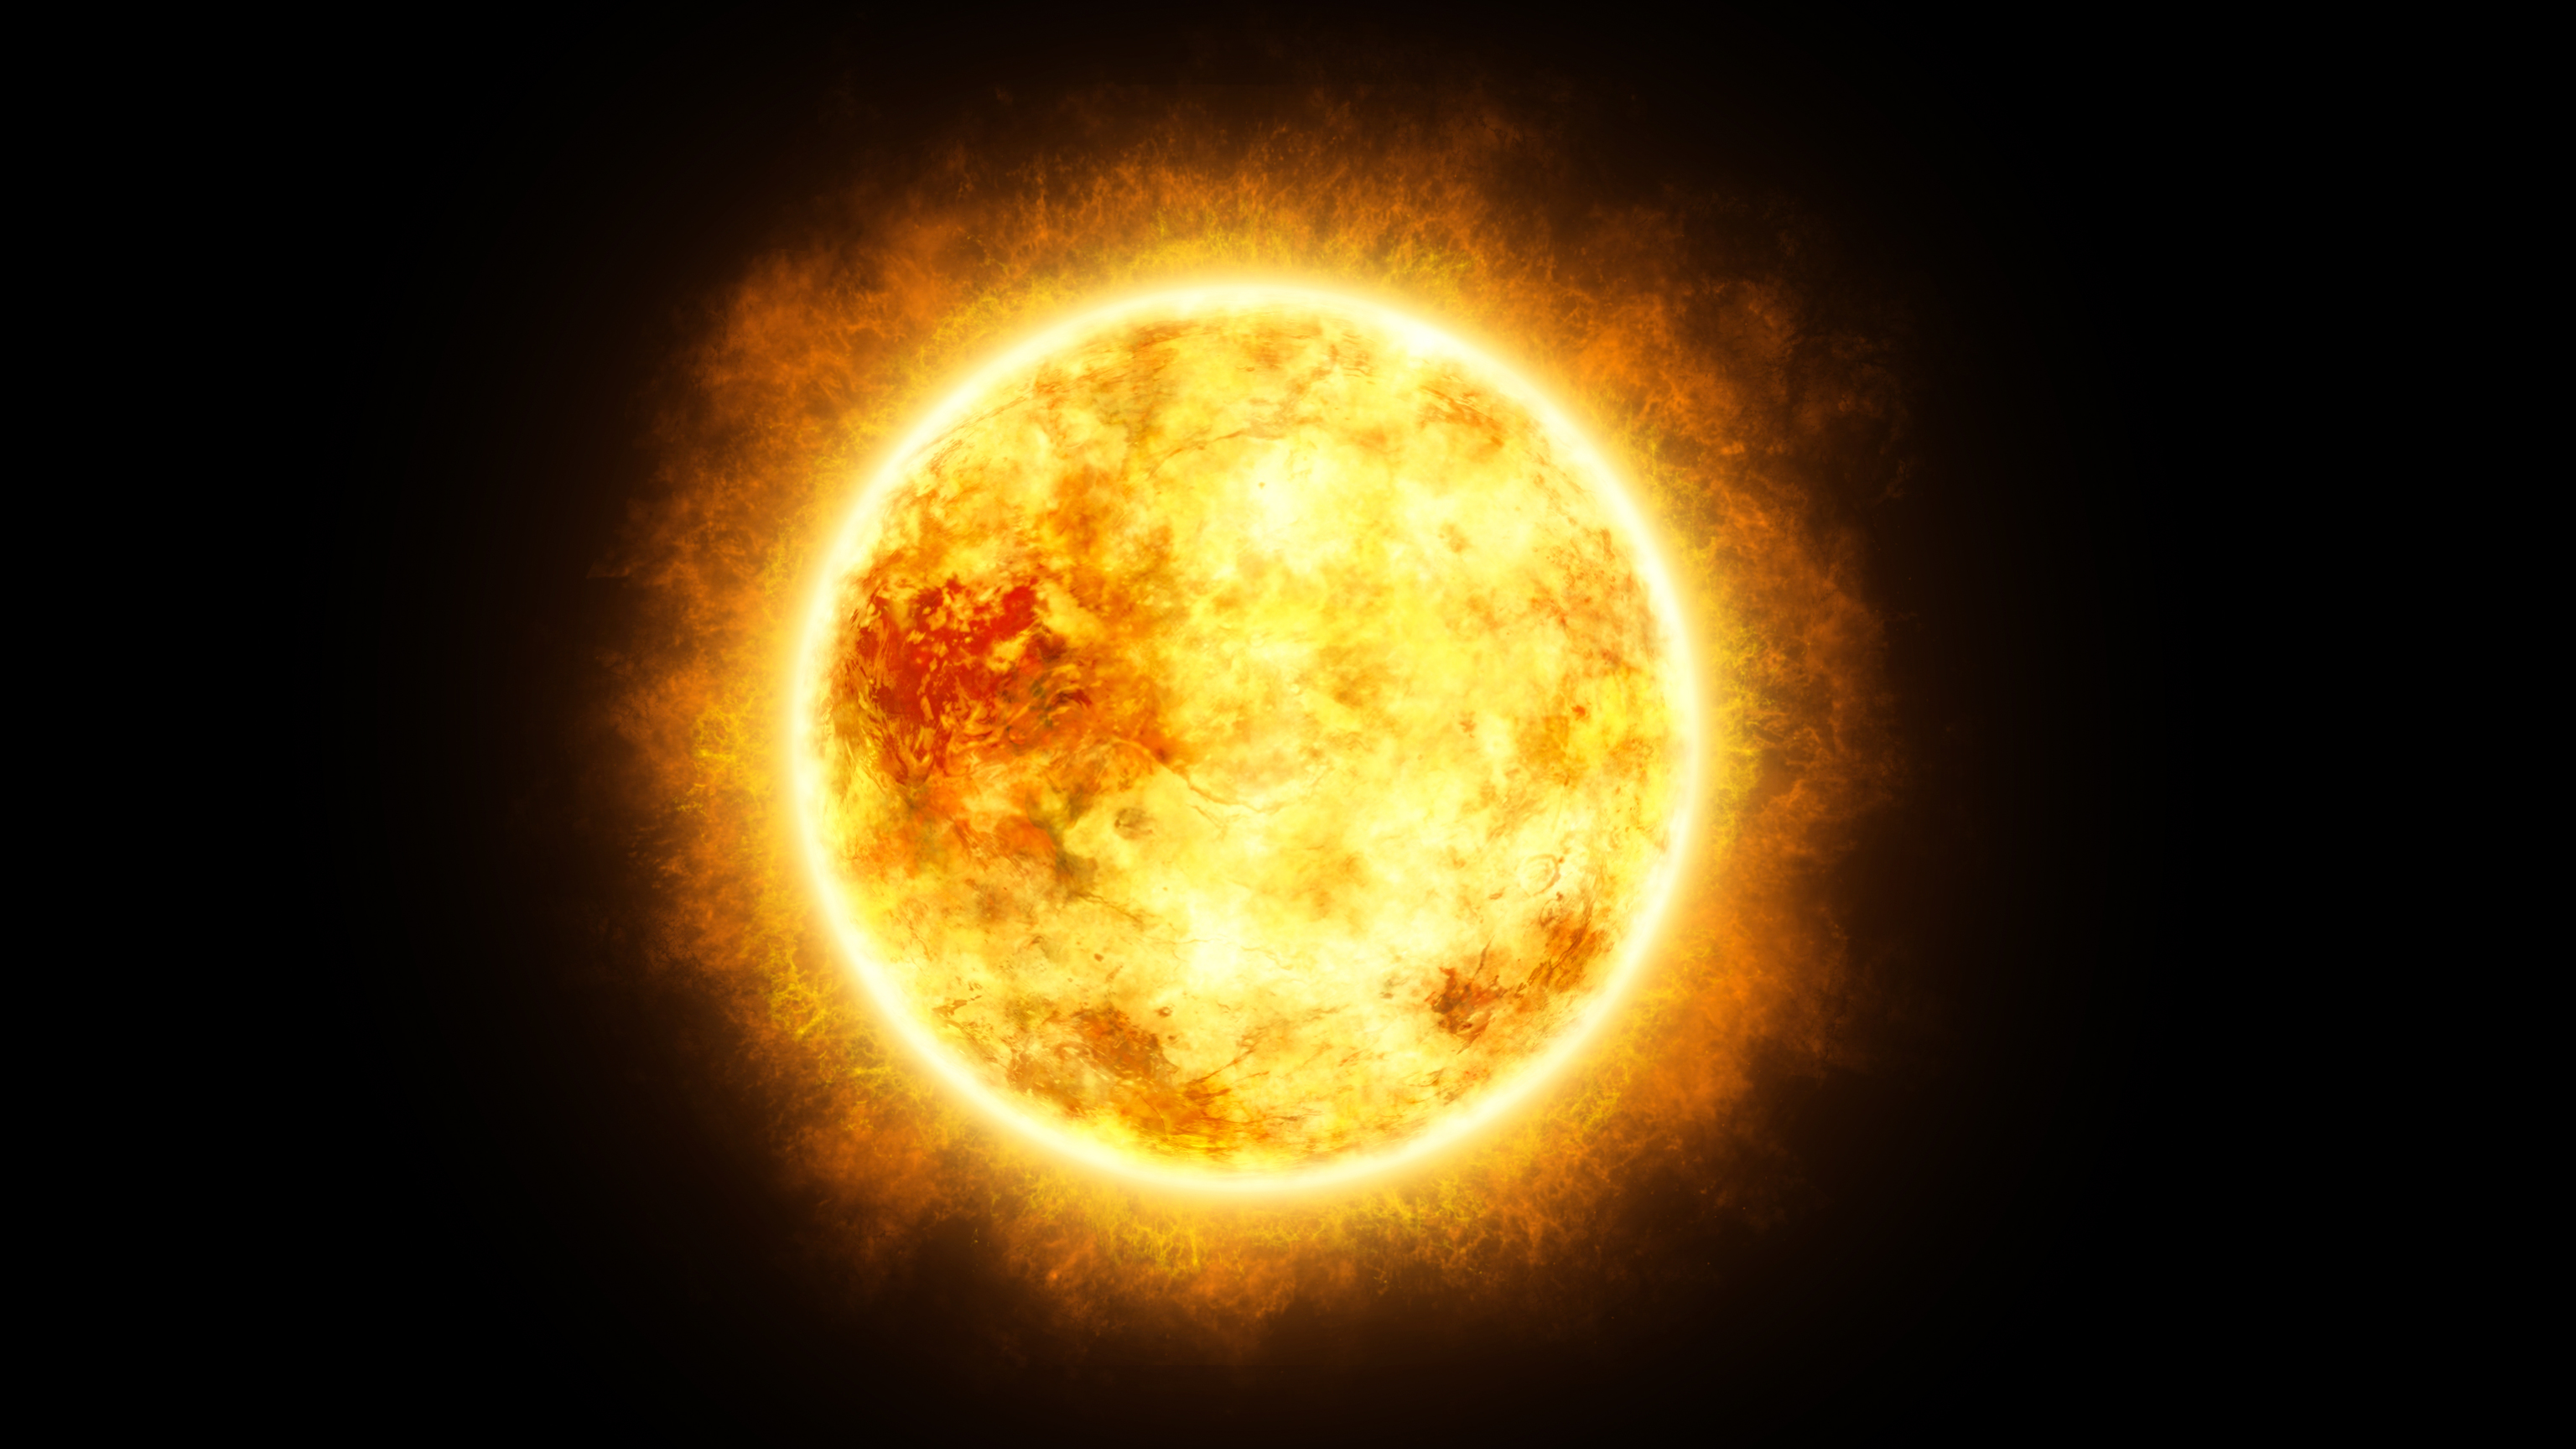 Imagen que refleja el fenómeno natural de un eclipse solar.